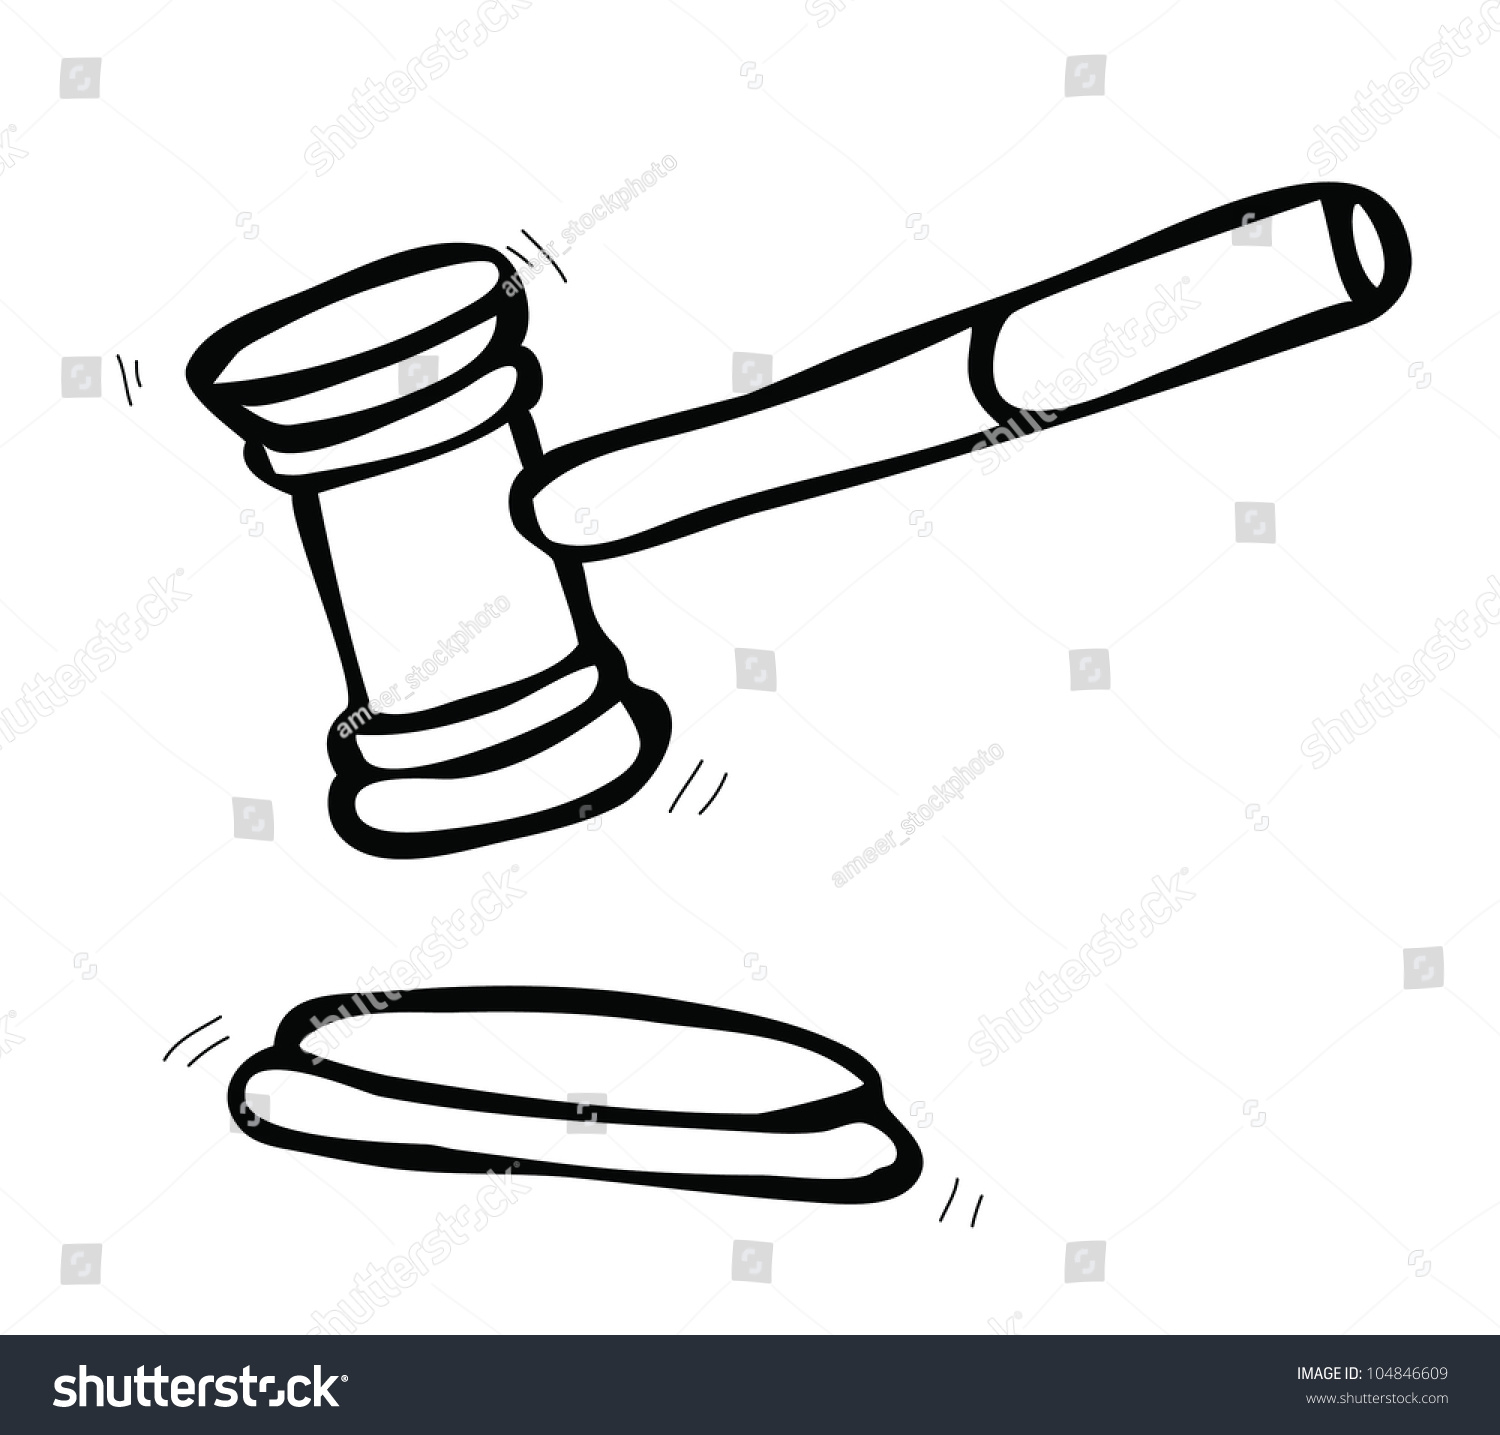 Hammer Of Judge Stock Vector Illustration 104846609 : Shutterstock